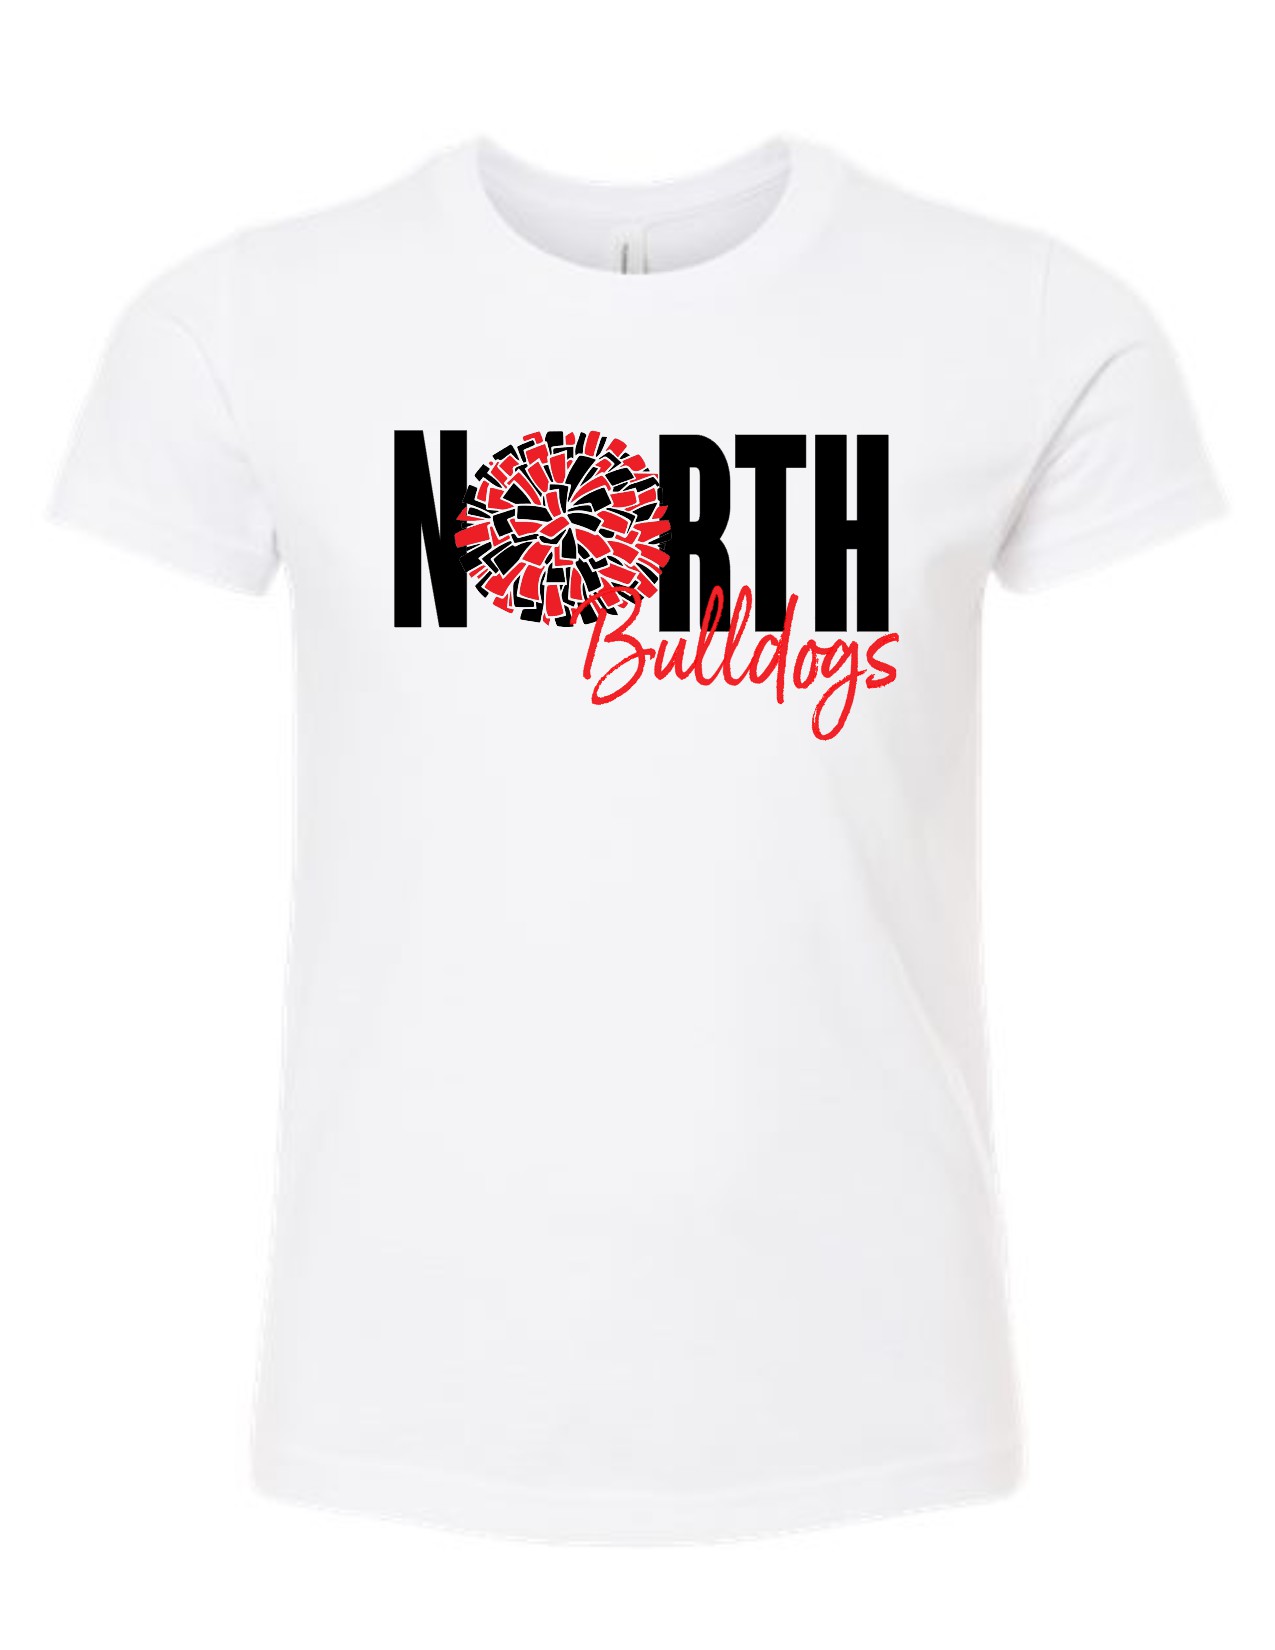 1/2 NORTH Pom - Bella Triblend T-shirt - w/ ROSTER ON BACK - EM Local